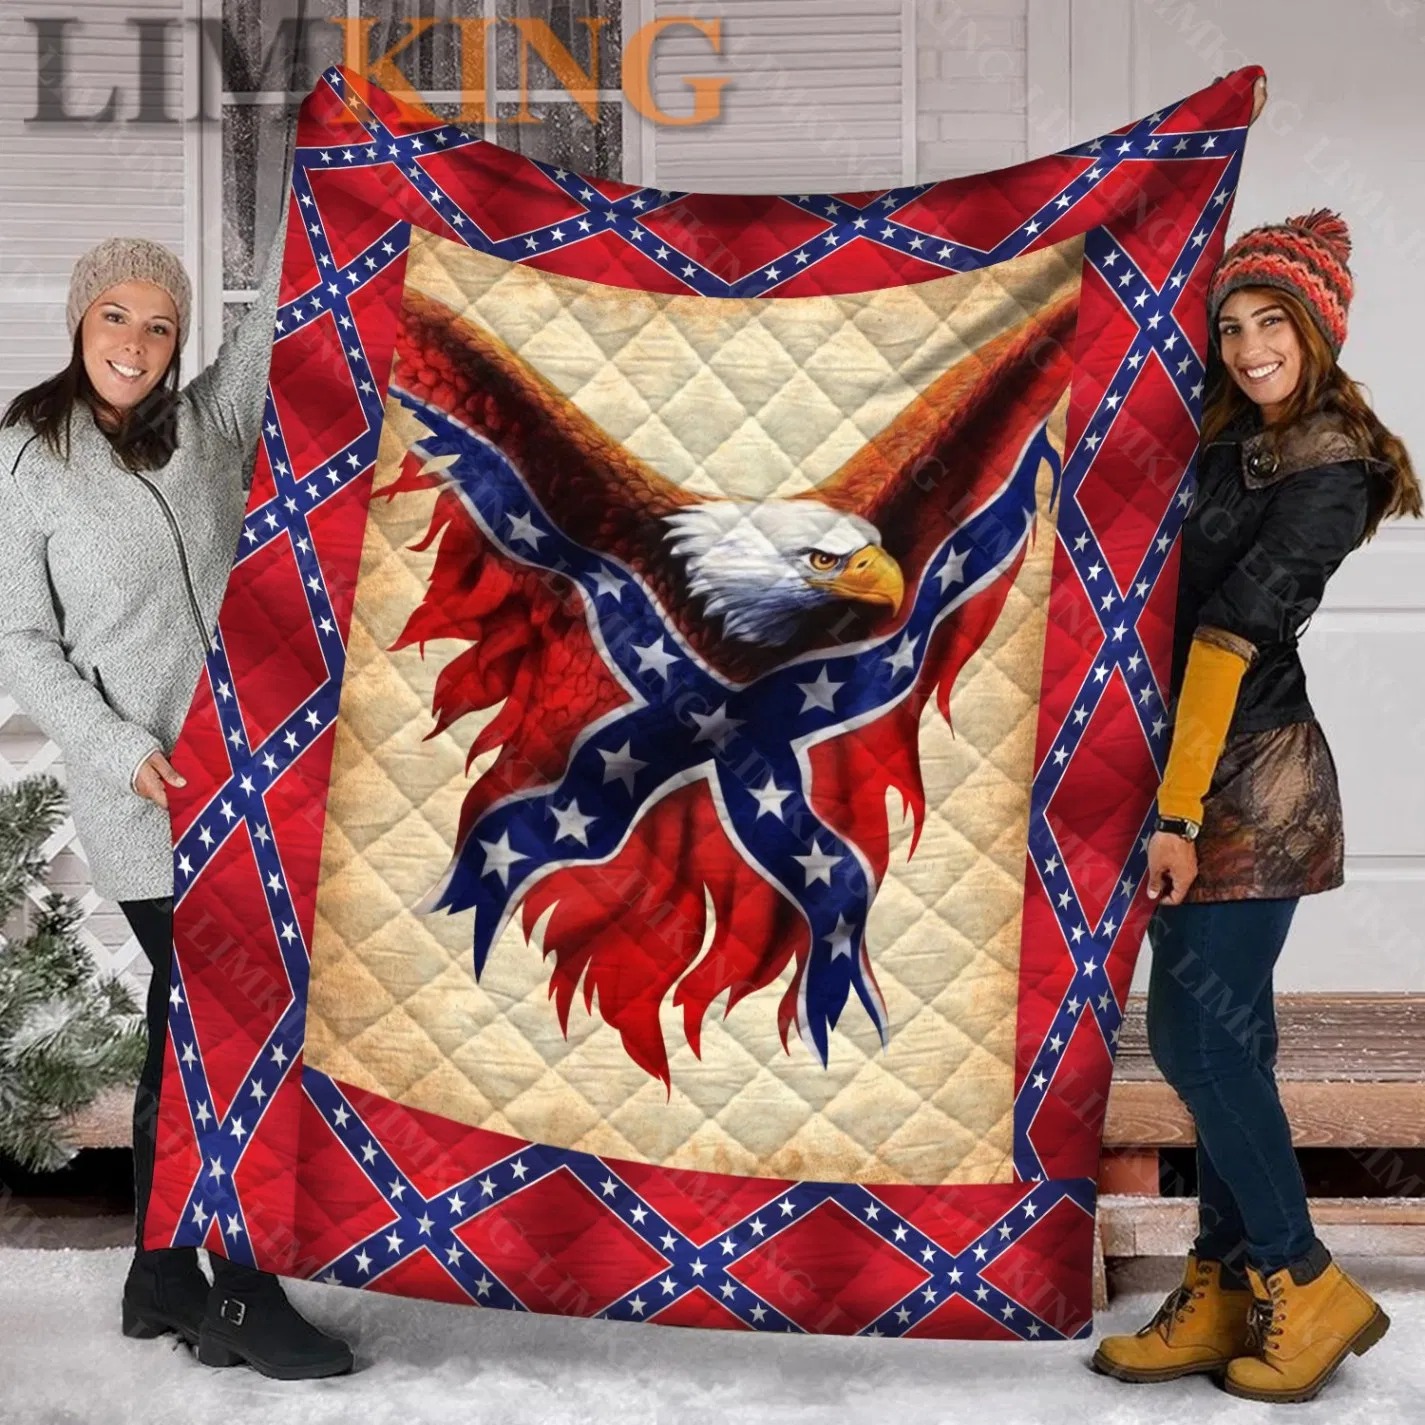 Confederate eagle quilt